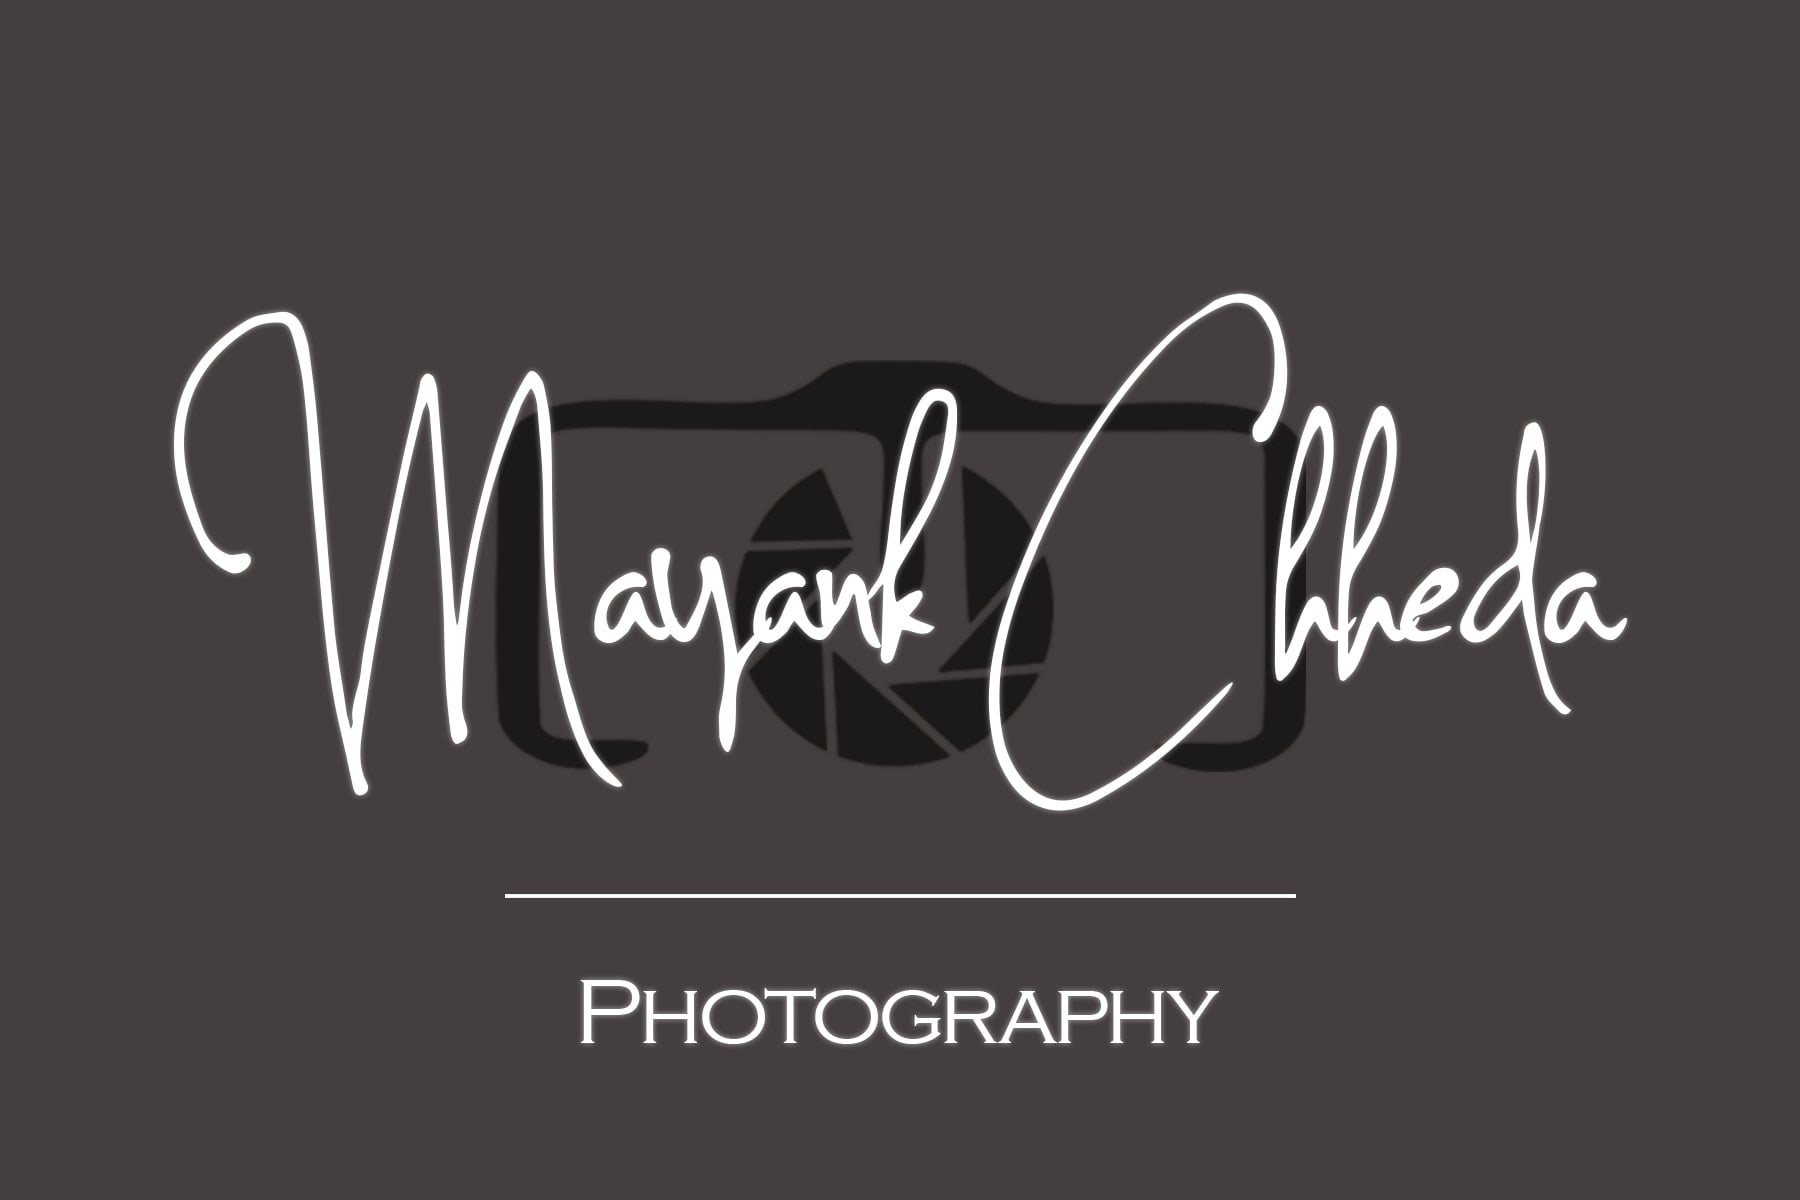 Mayank Chheda Photography